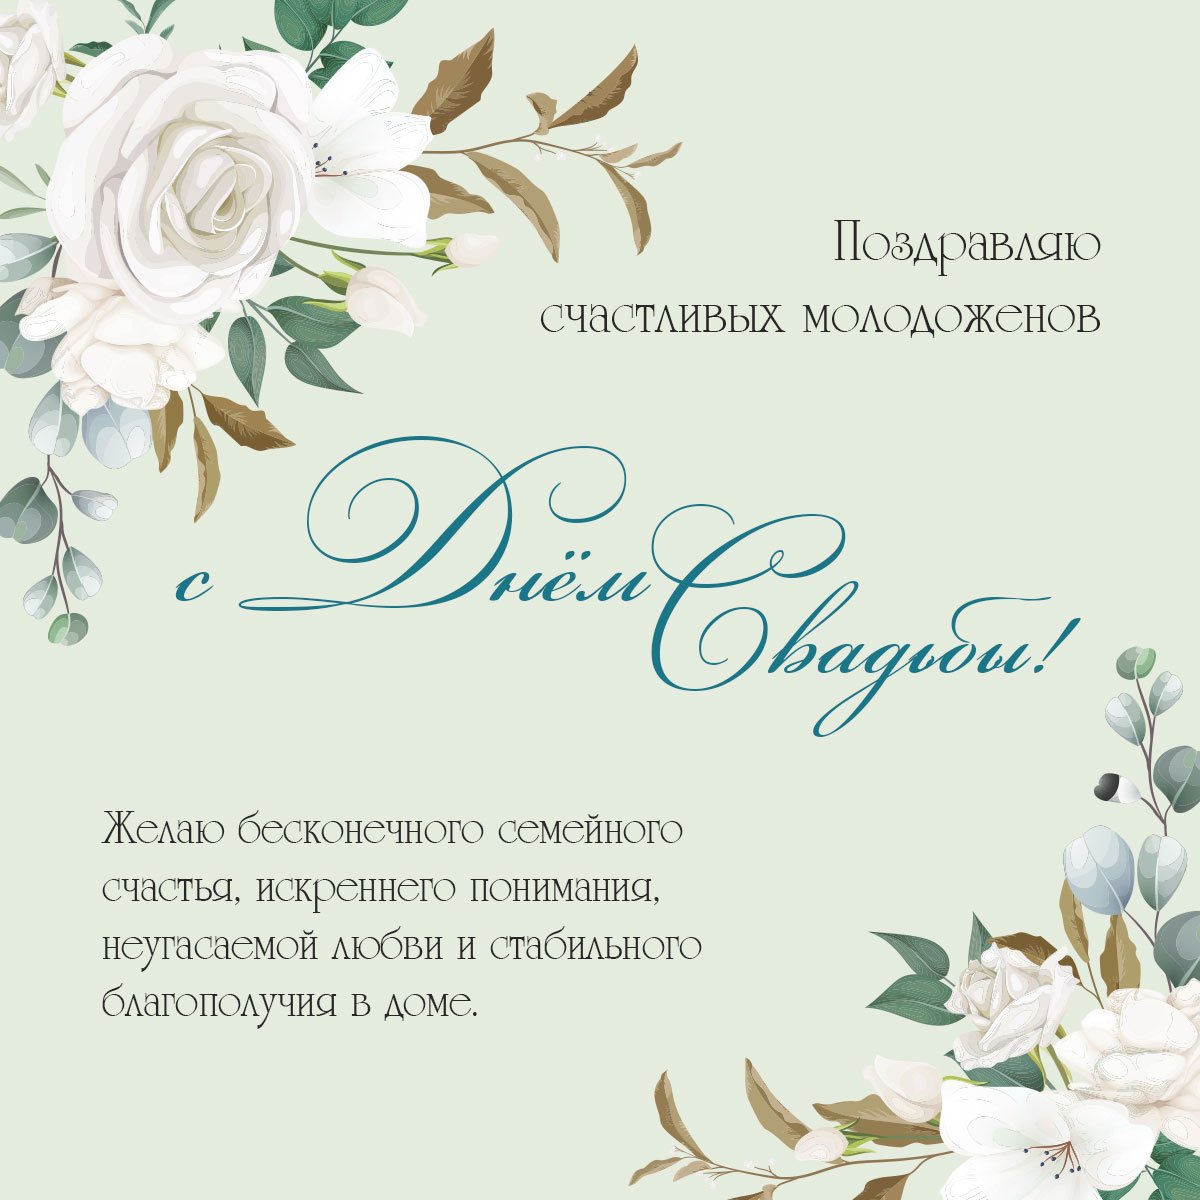 Тосты на свадьбу на казахском языке: оригинальные национальные поздравления